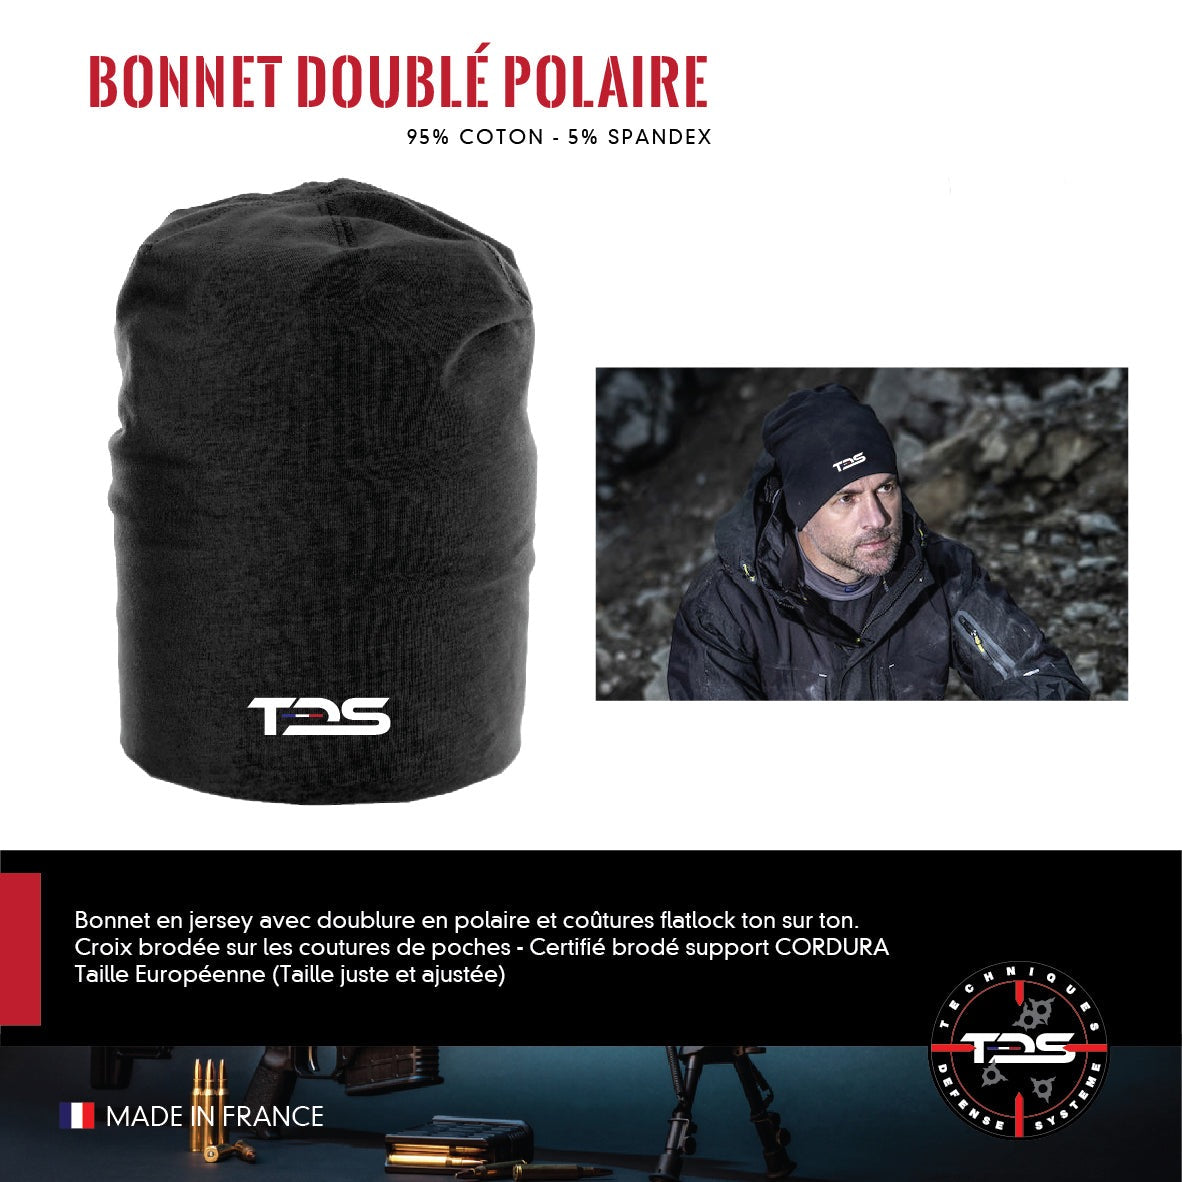 Bonnet doublé polaire  Contact ADD ON TEXTILE